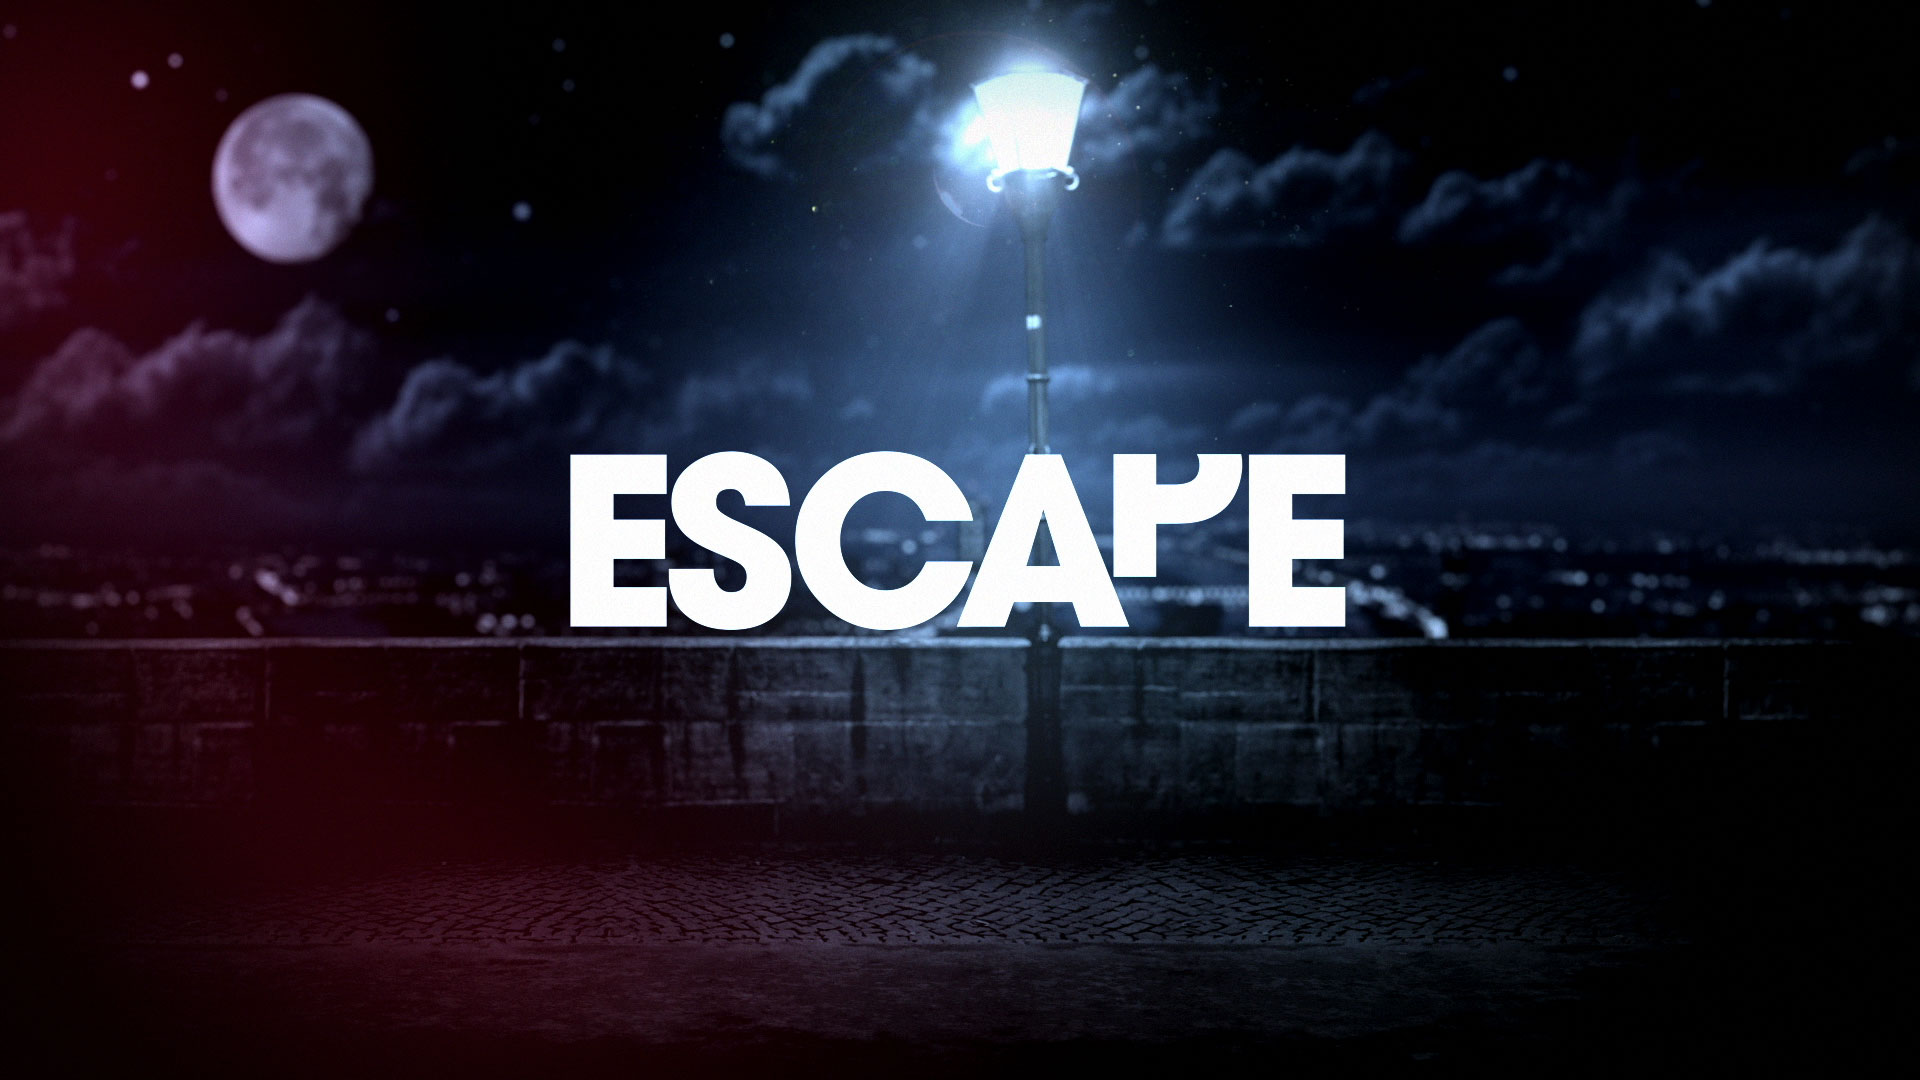 Escape - slip away.